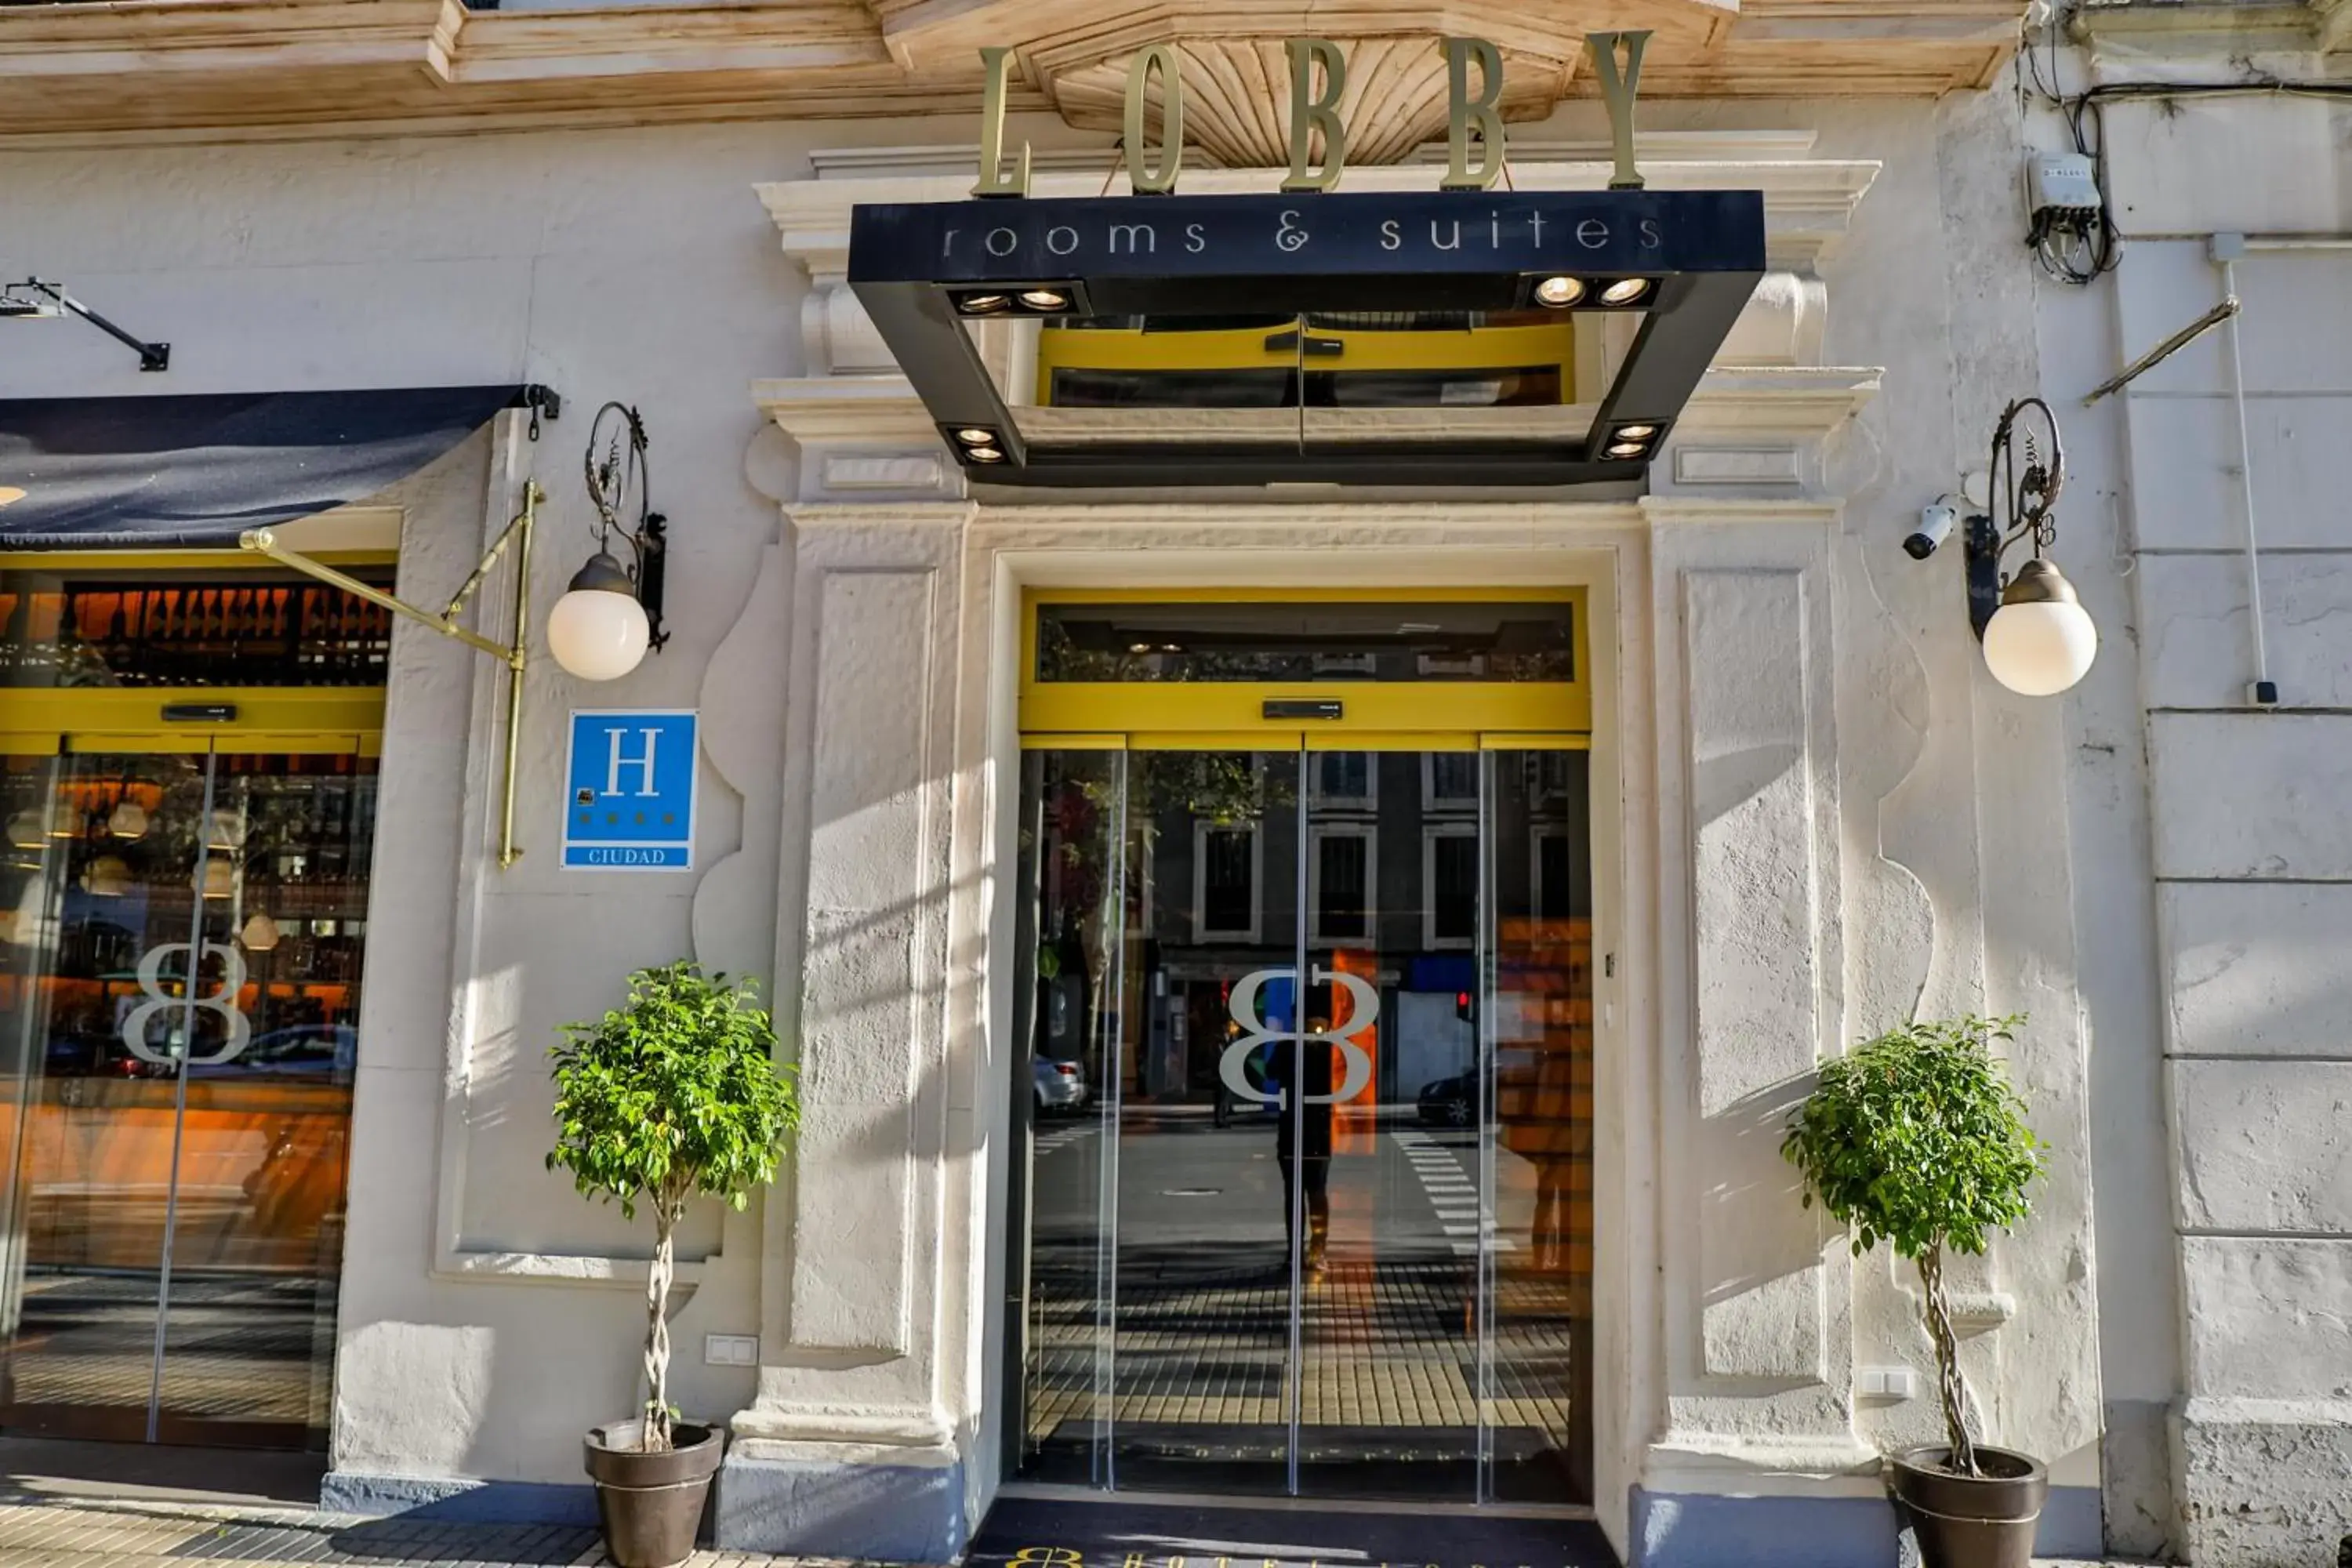 Area and facilities in Hotel Lobby Room Sevilla